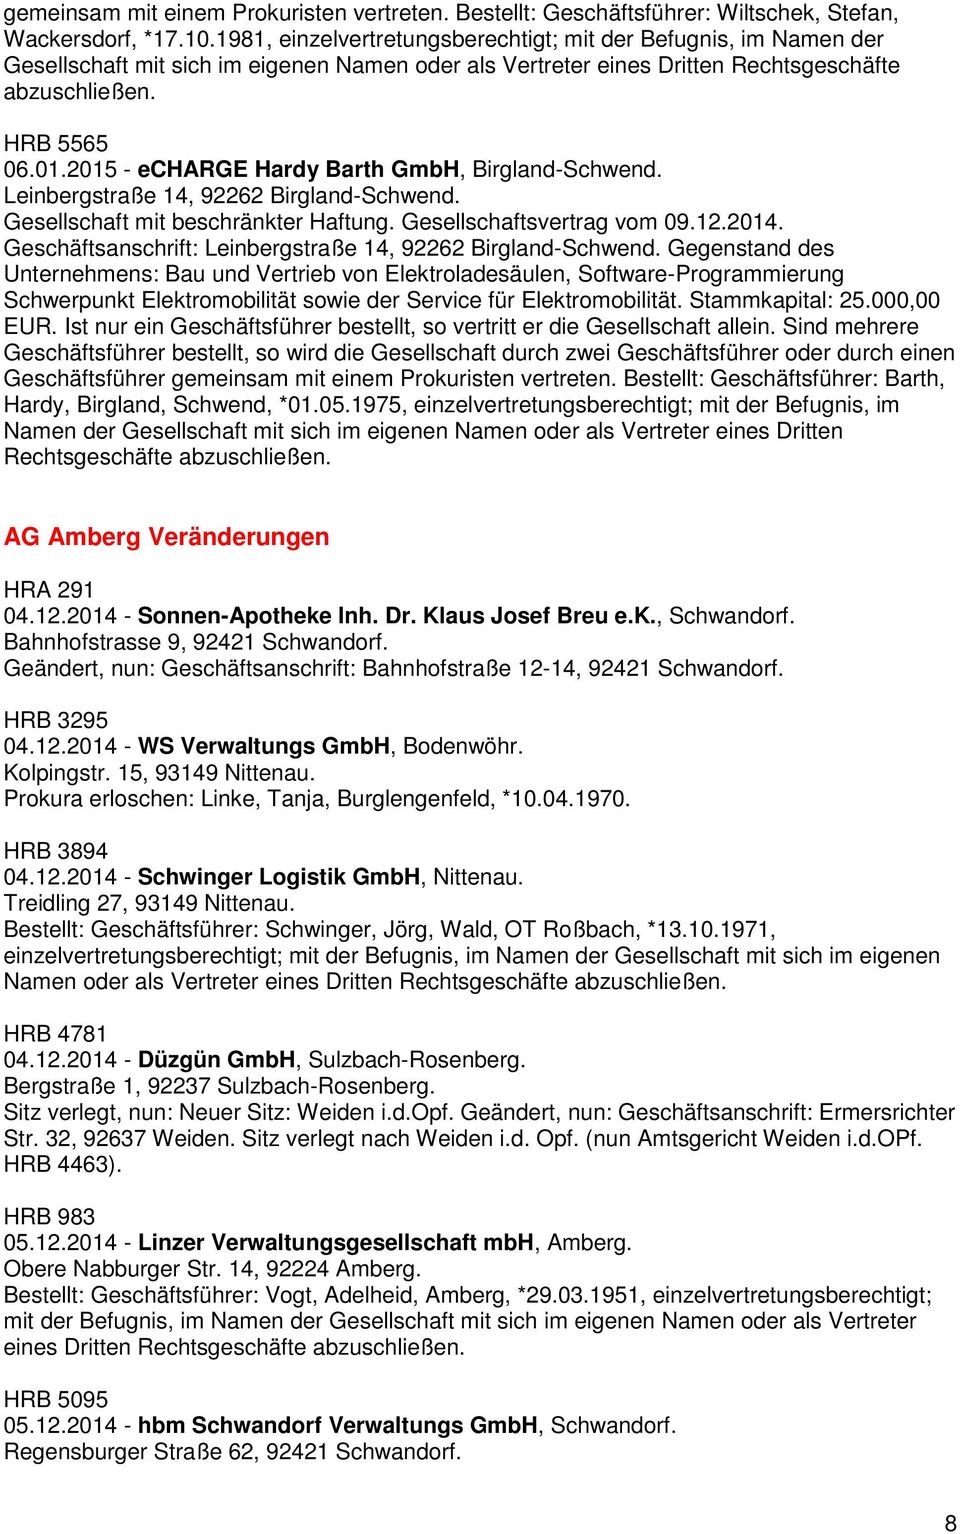 2015 - echarge Hardy Barth GmbH, Birgland-Schwend. Leinbergstraße 14, 92262 Birgland-Schwend. Gesellschaft mit beschränkter Haftung. Gesellschaftsvertrag vom 09.12.2014.